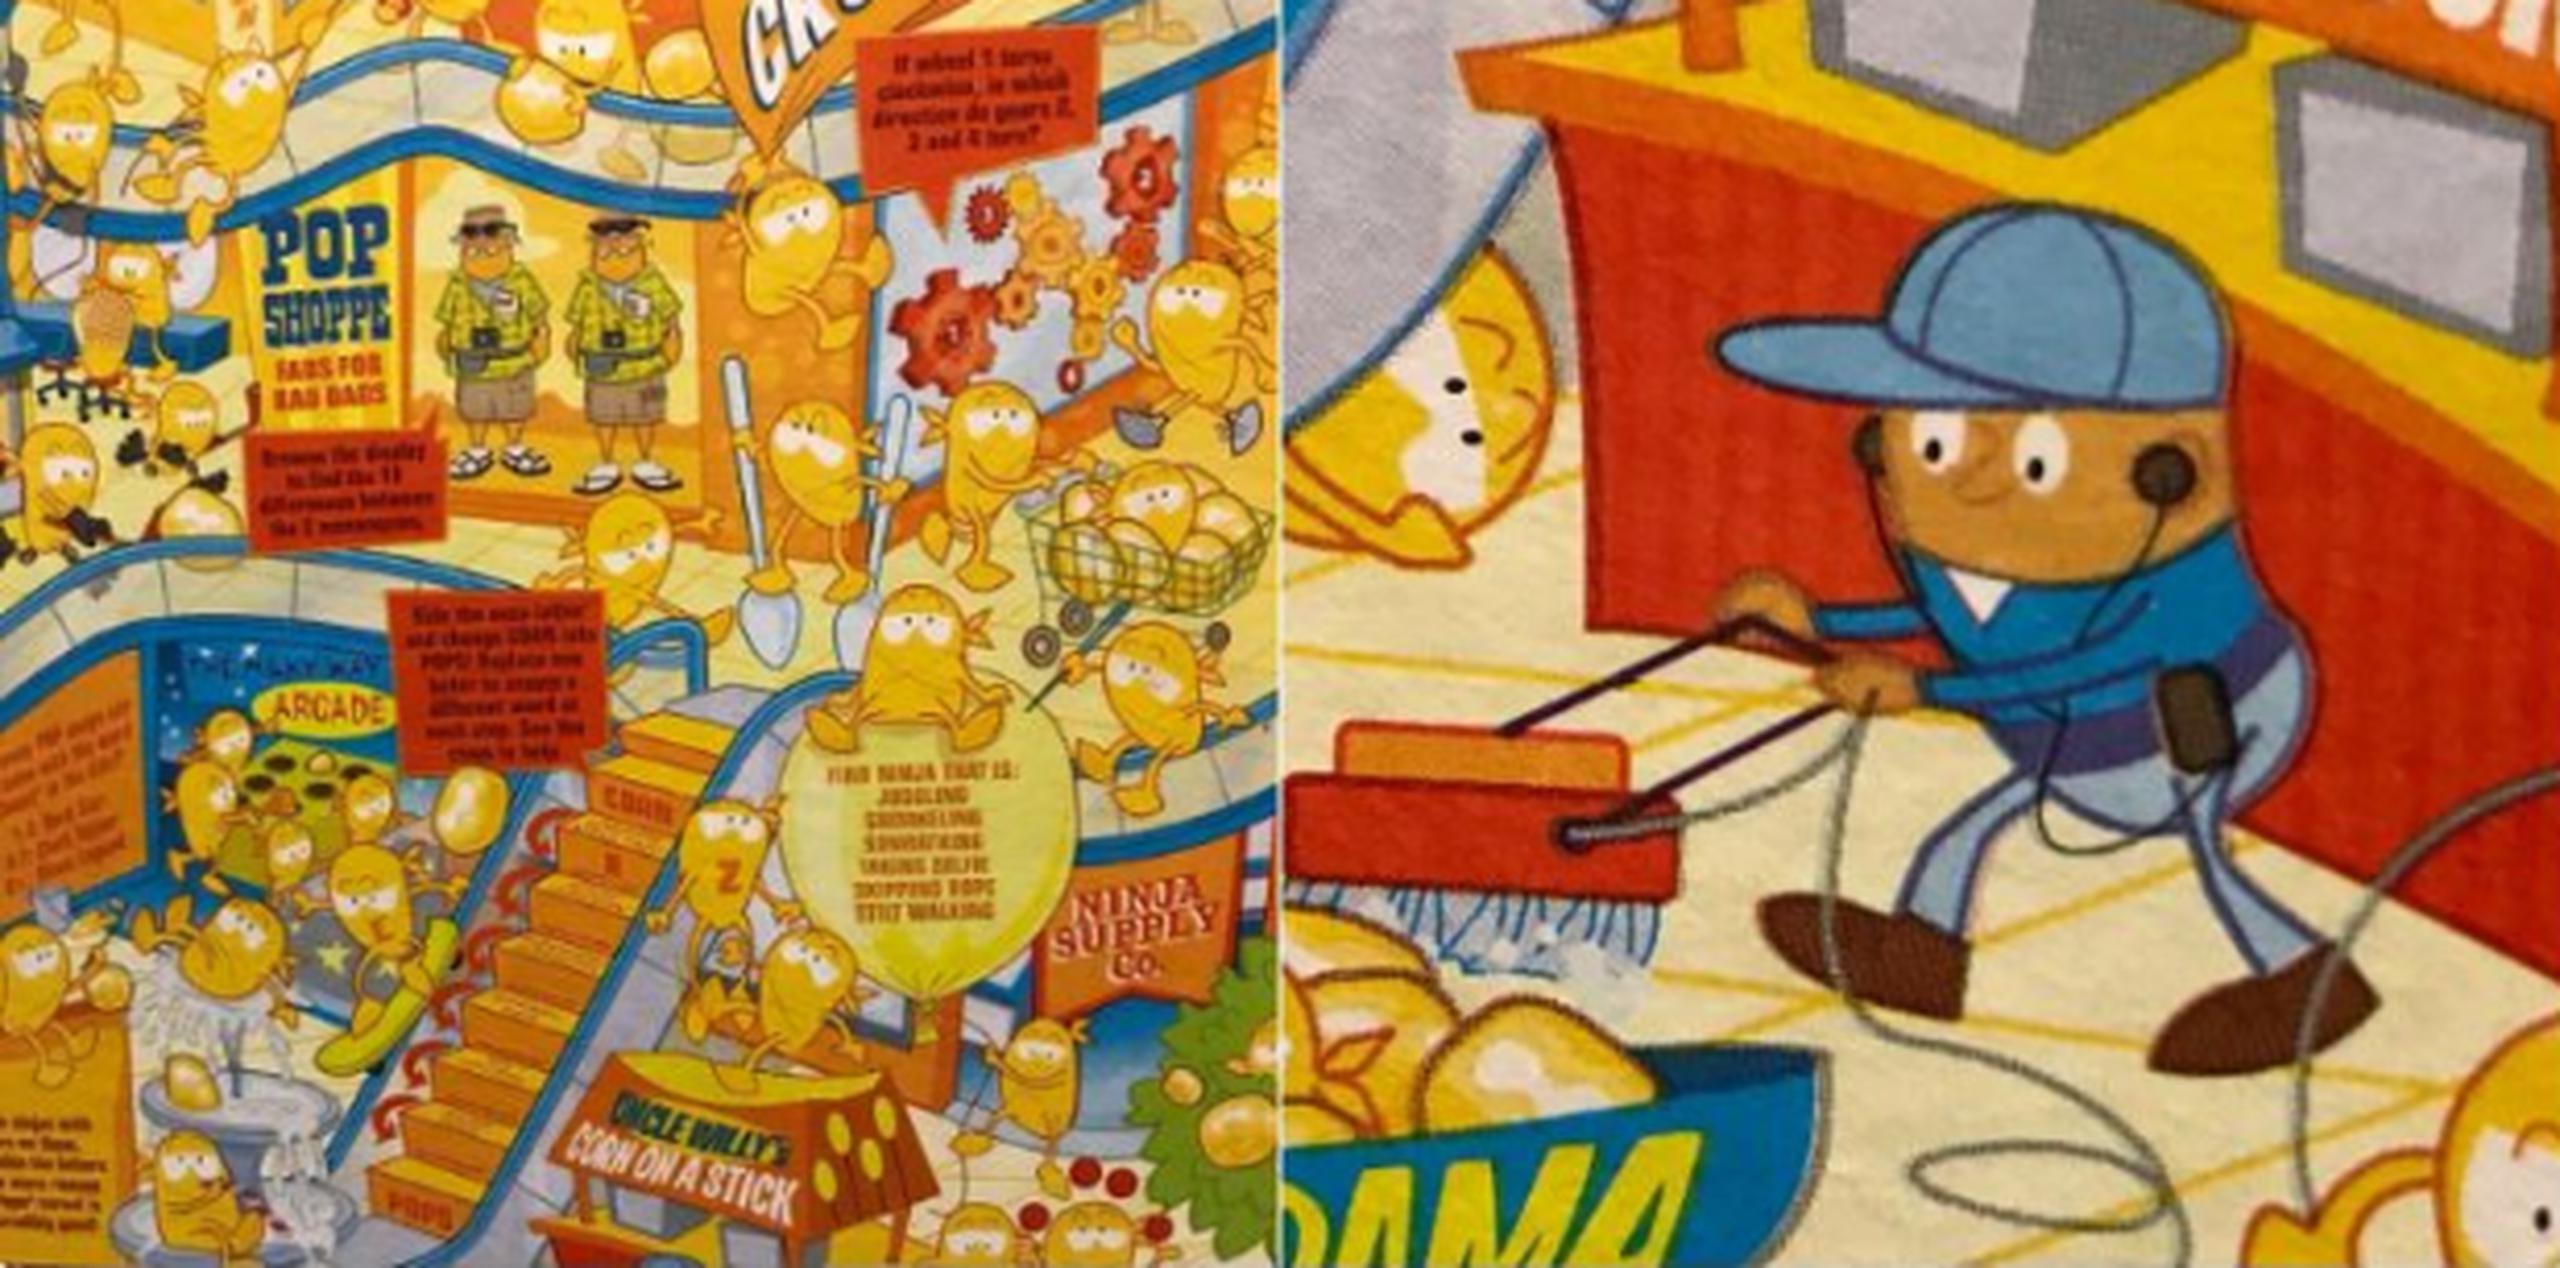 La caja de cereal muestra unas caricaturas de Corn Pops en un centro comercial. 
 (Twitter)